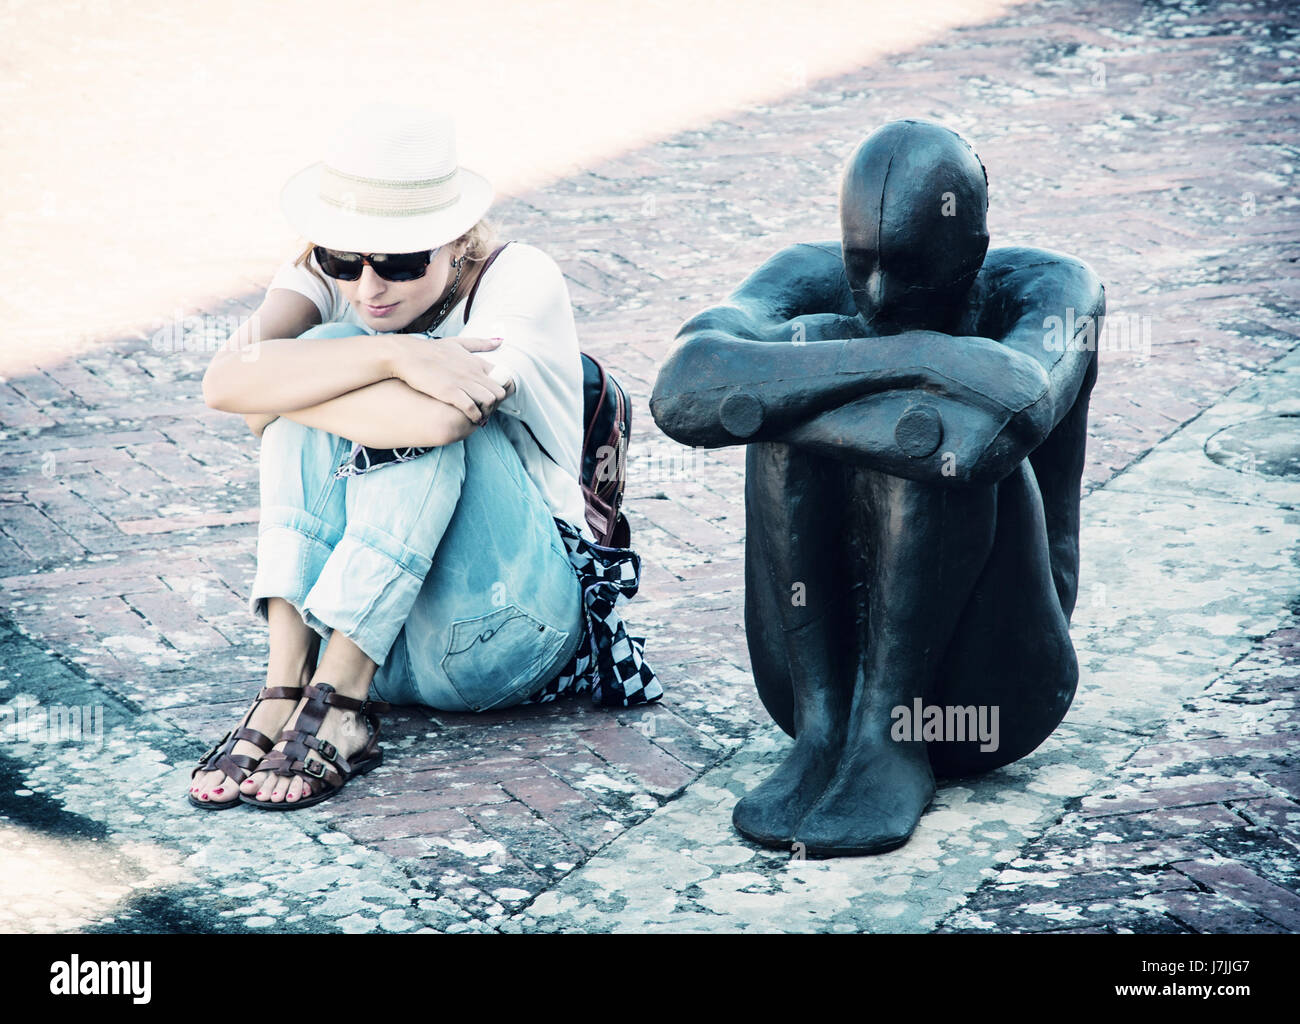 Junge Frau sitzt und die Pose der Eisen Statue imitiert. Forte di Belvedere, Florenz, Italien. Retro-Foto-Filter. Stockfoto